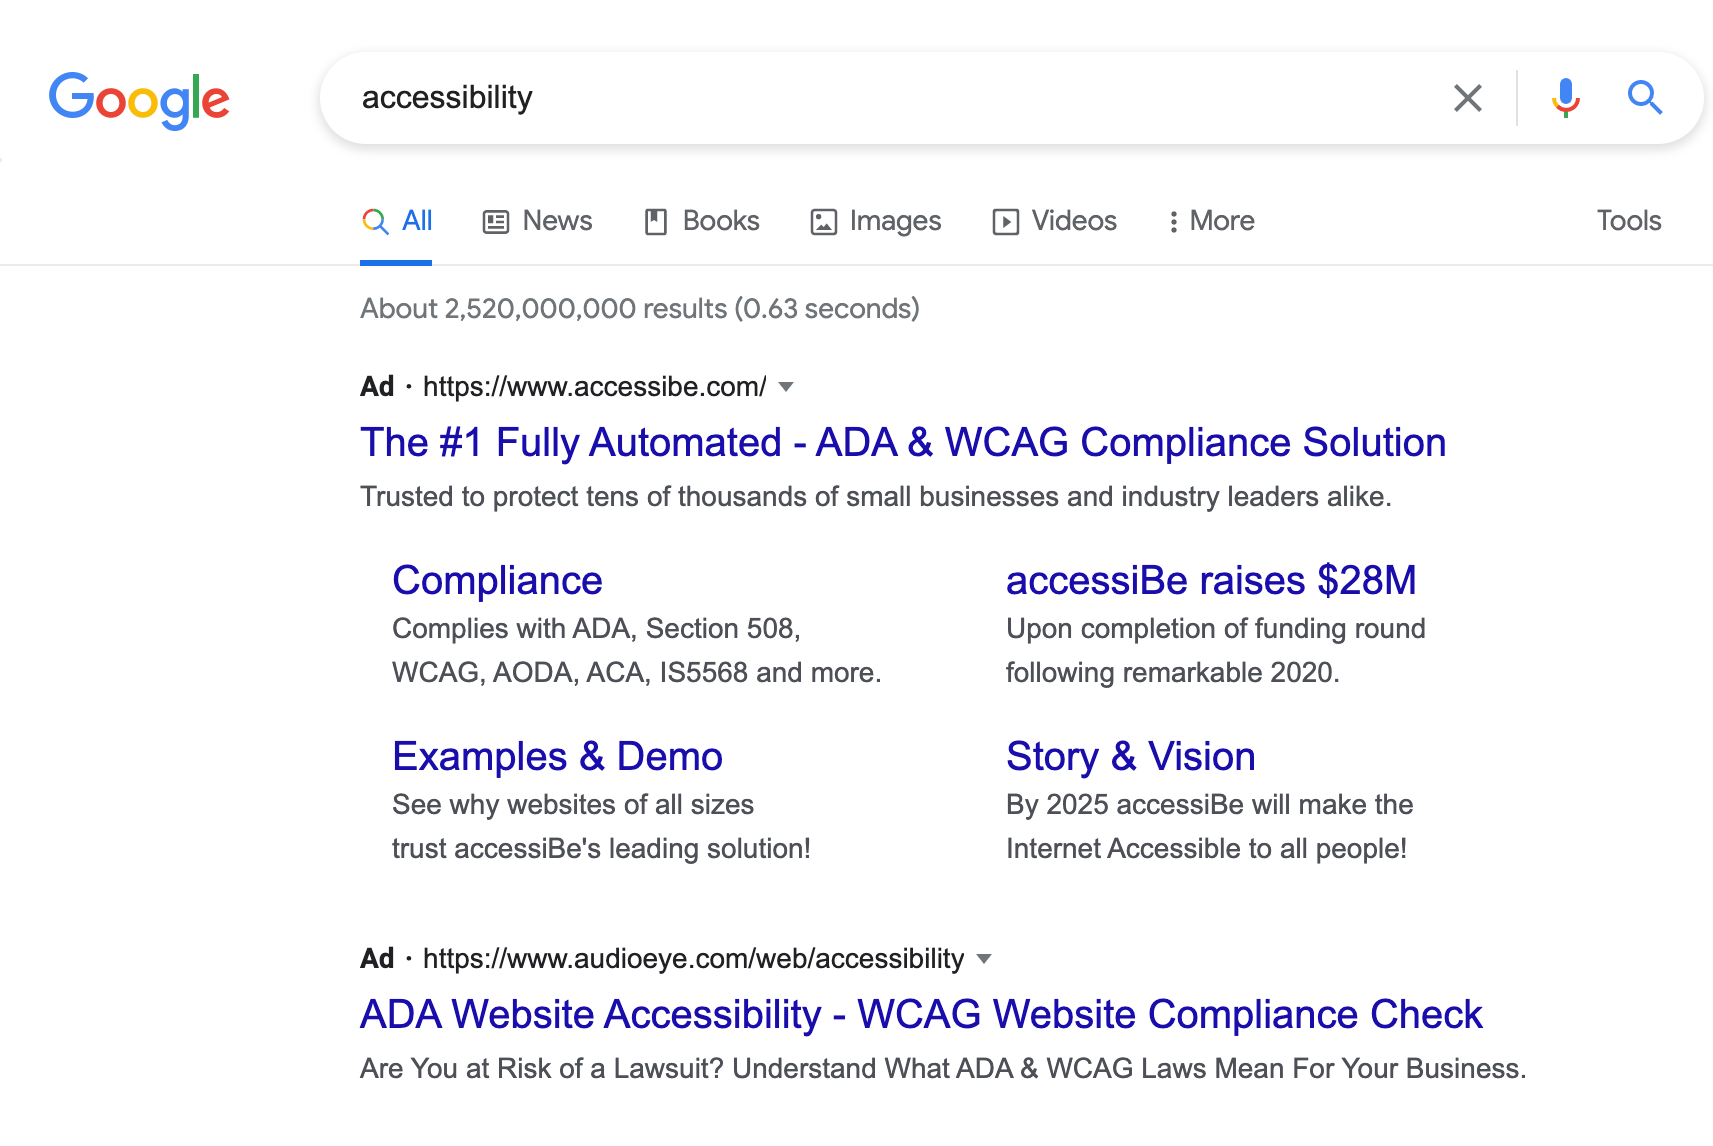 「アクセシビリティ」に関するGoogle検索のスクリーンショット。一番上の結果は、ページの大部分を占める accessiBe の広告です。そのすぐ下に AudioEye の広告があります